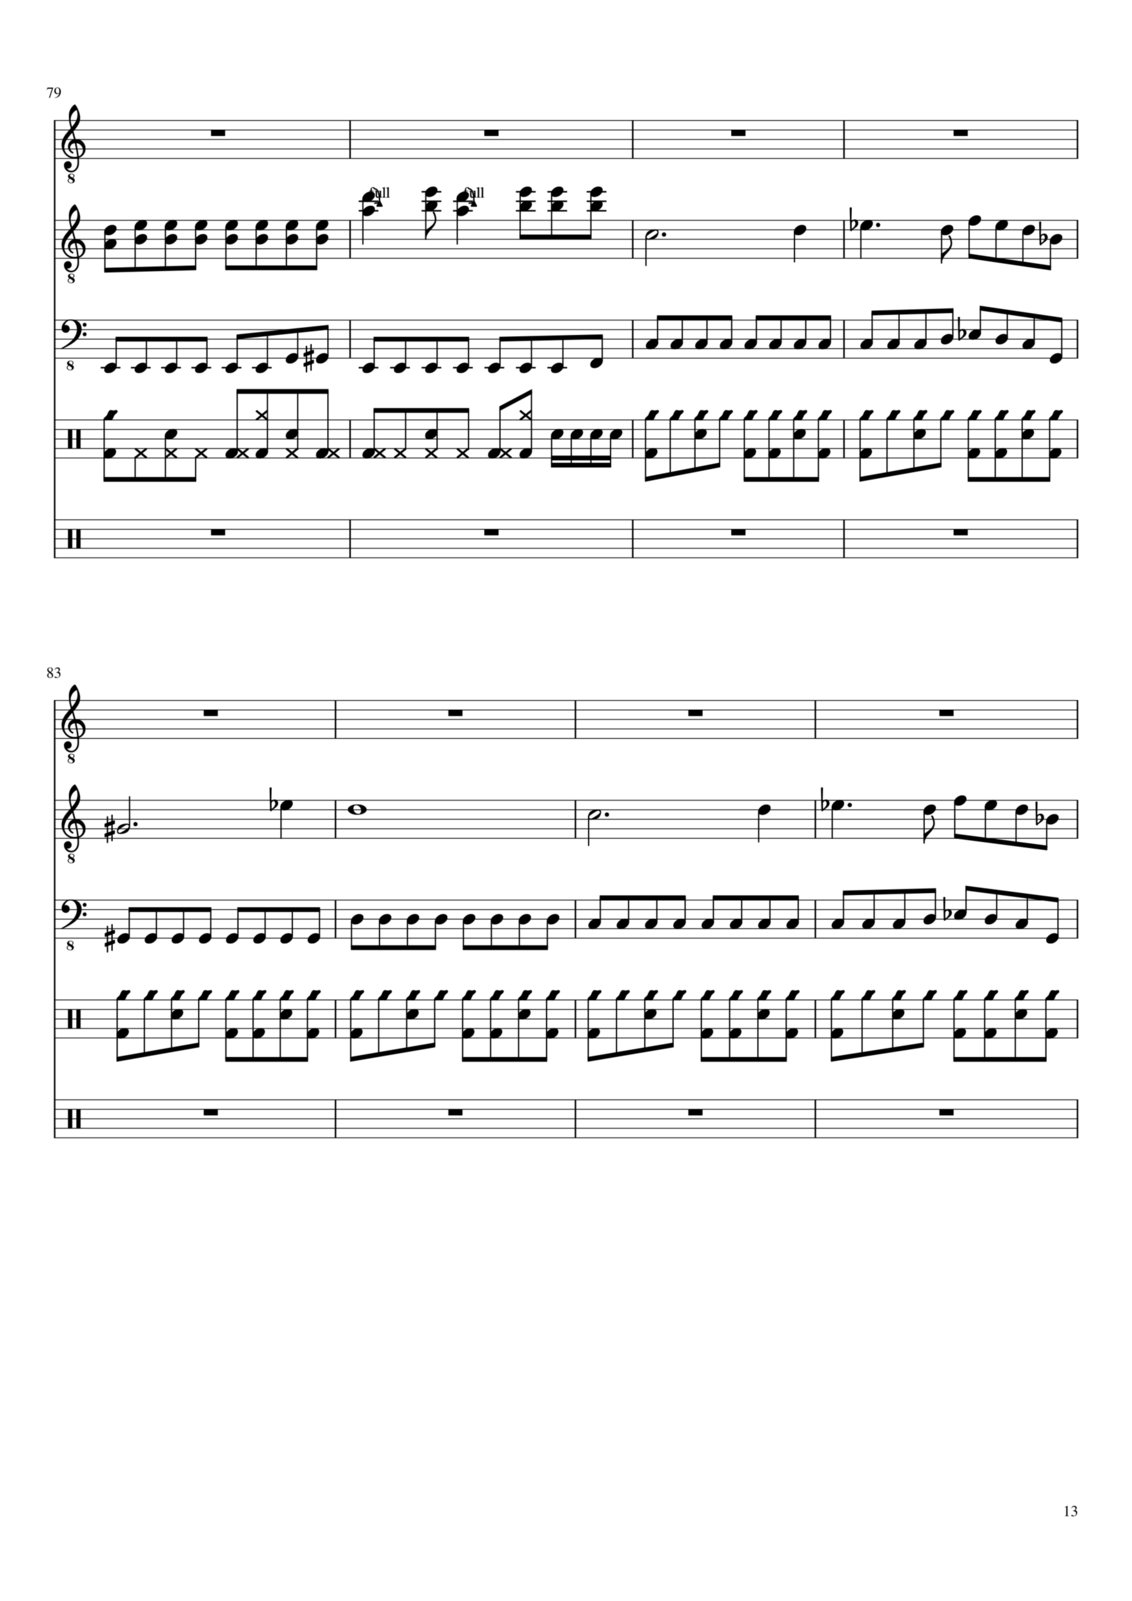 Vechnaya prizrachnaya vstrechnaya slide, Image 9